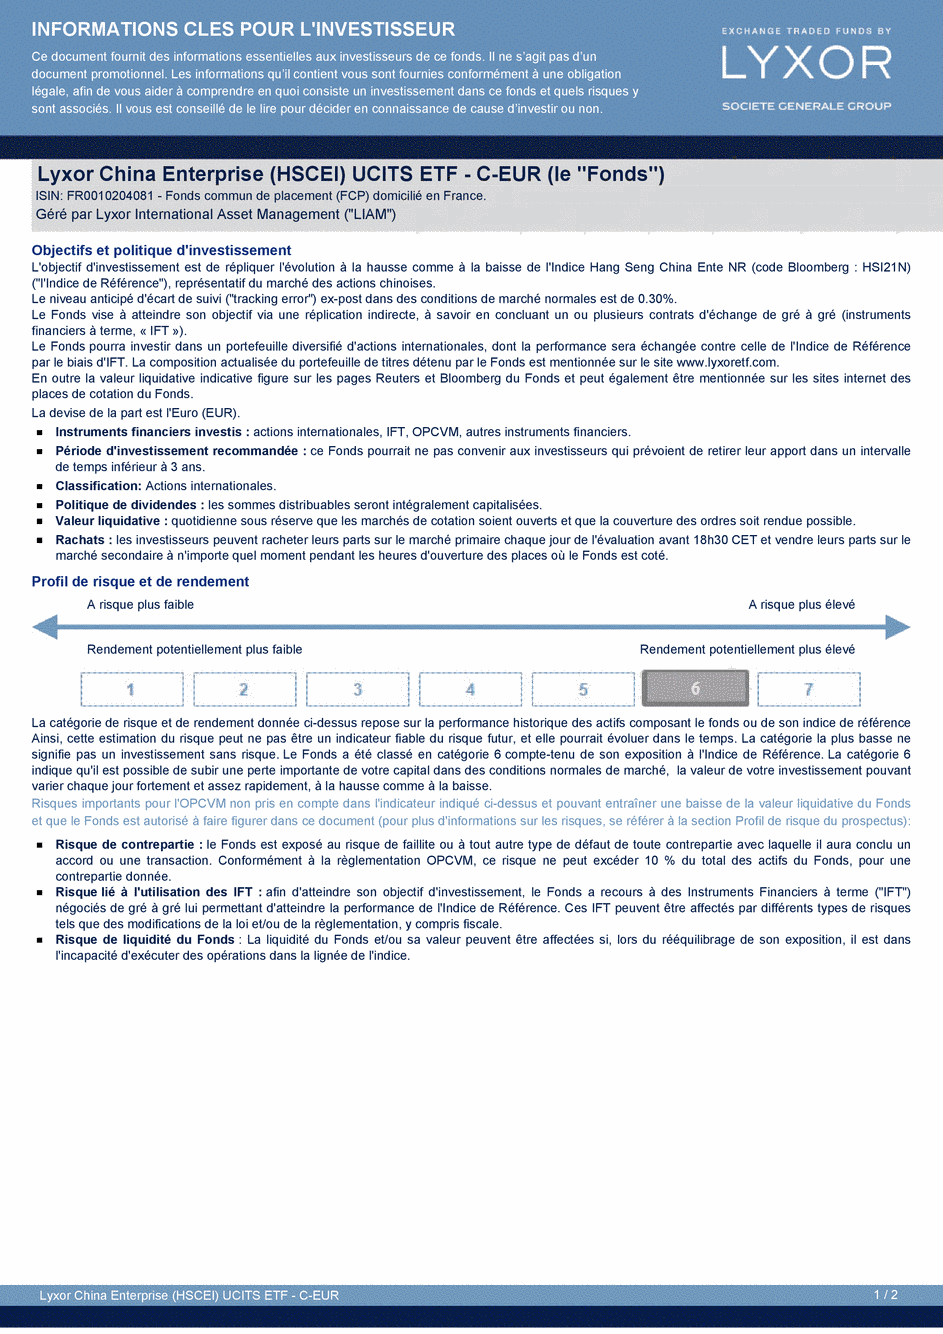 DICI Lyxor China Enterprise (HSCEI) UCITS ETF - Acc - 29/10/2015 - Français